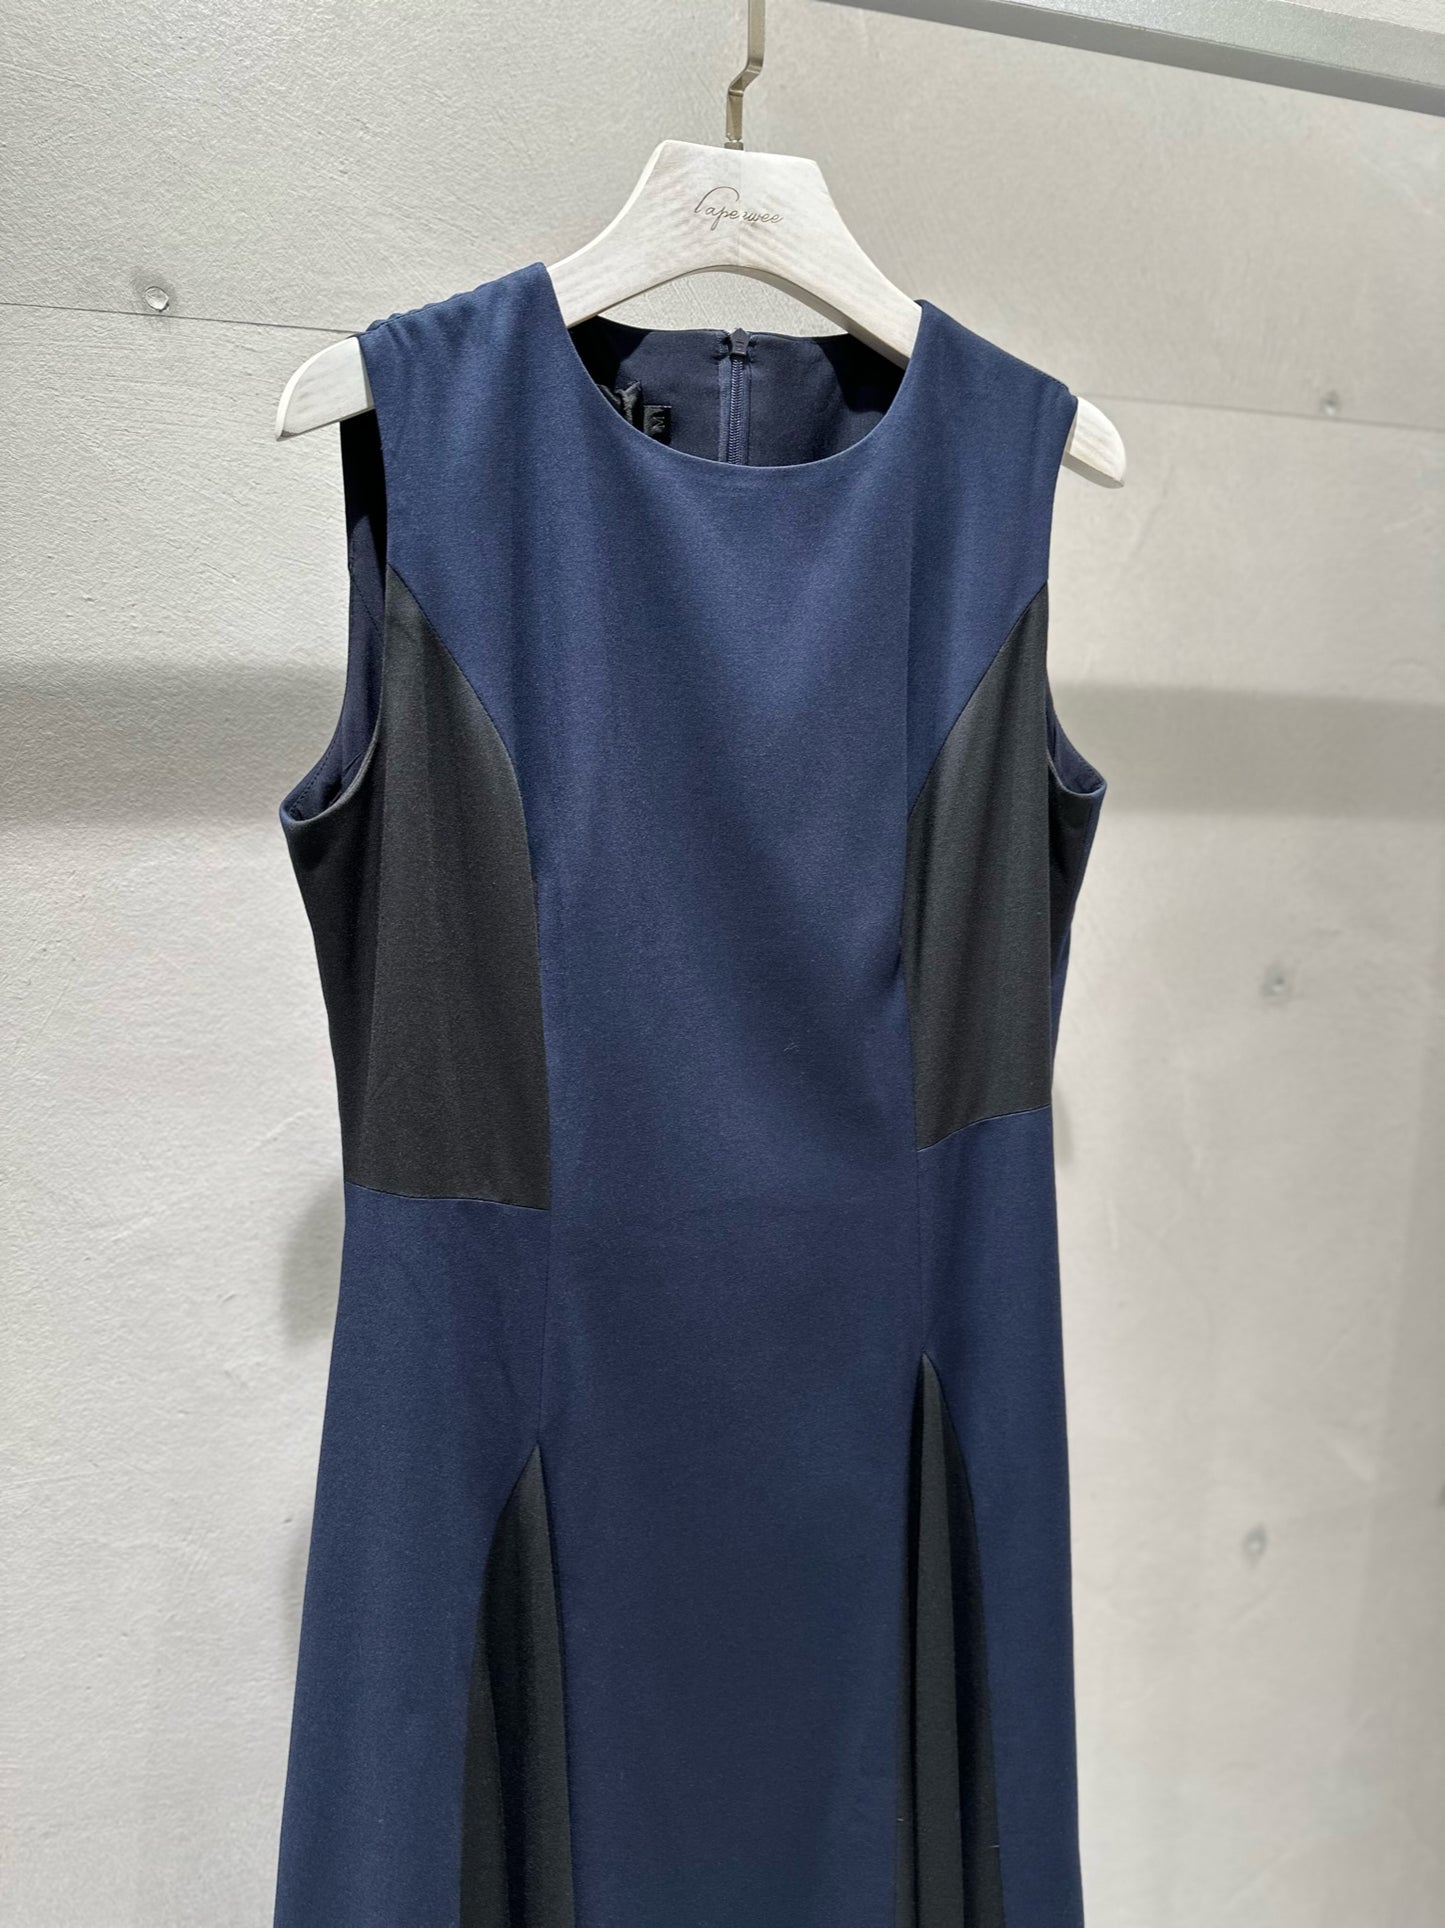 Dual-Tone Patchwork Dress -Size L